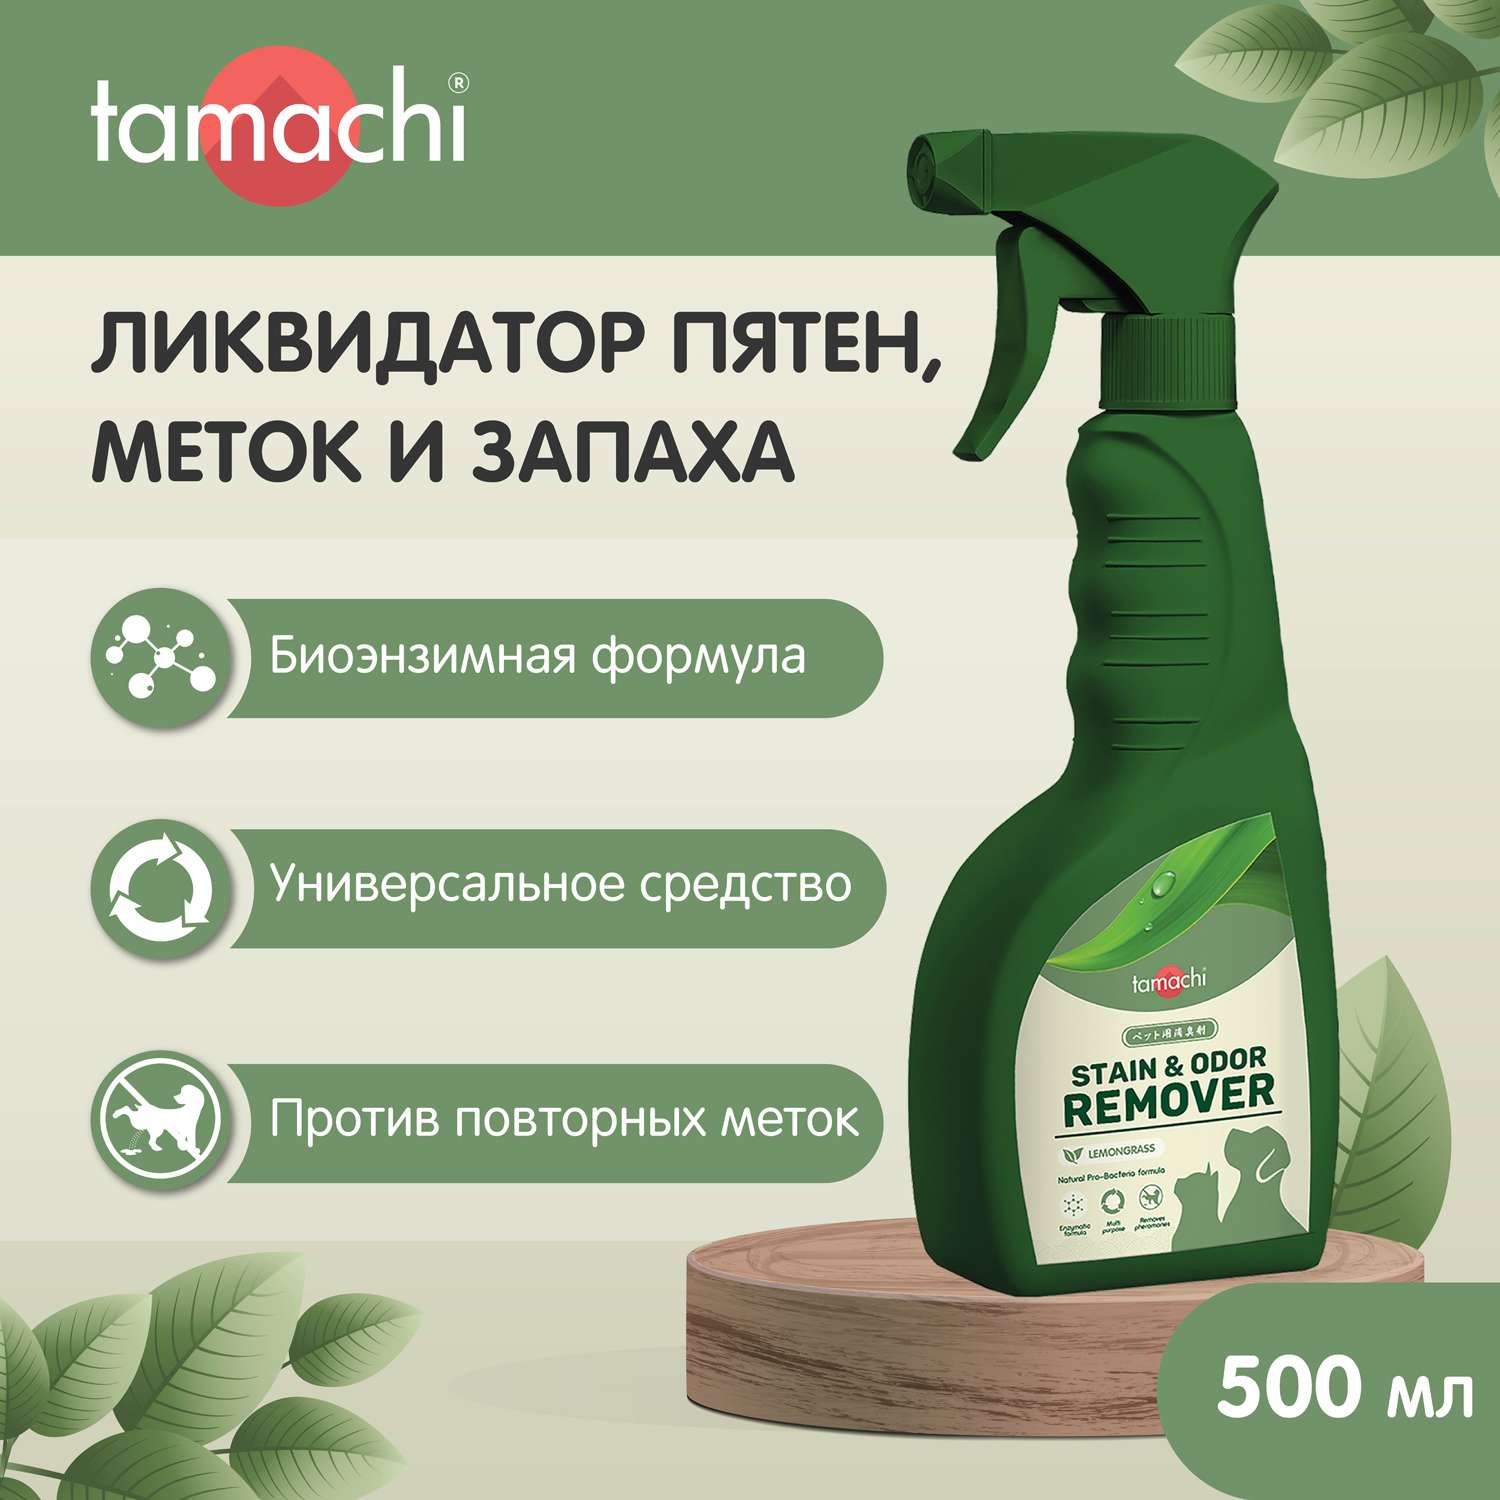 Спрей для животных Tamachi ликвидатор пятен, меток и запаха 500мл - фото 2